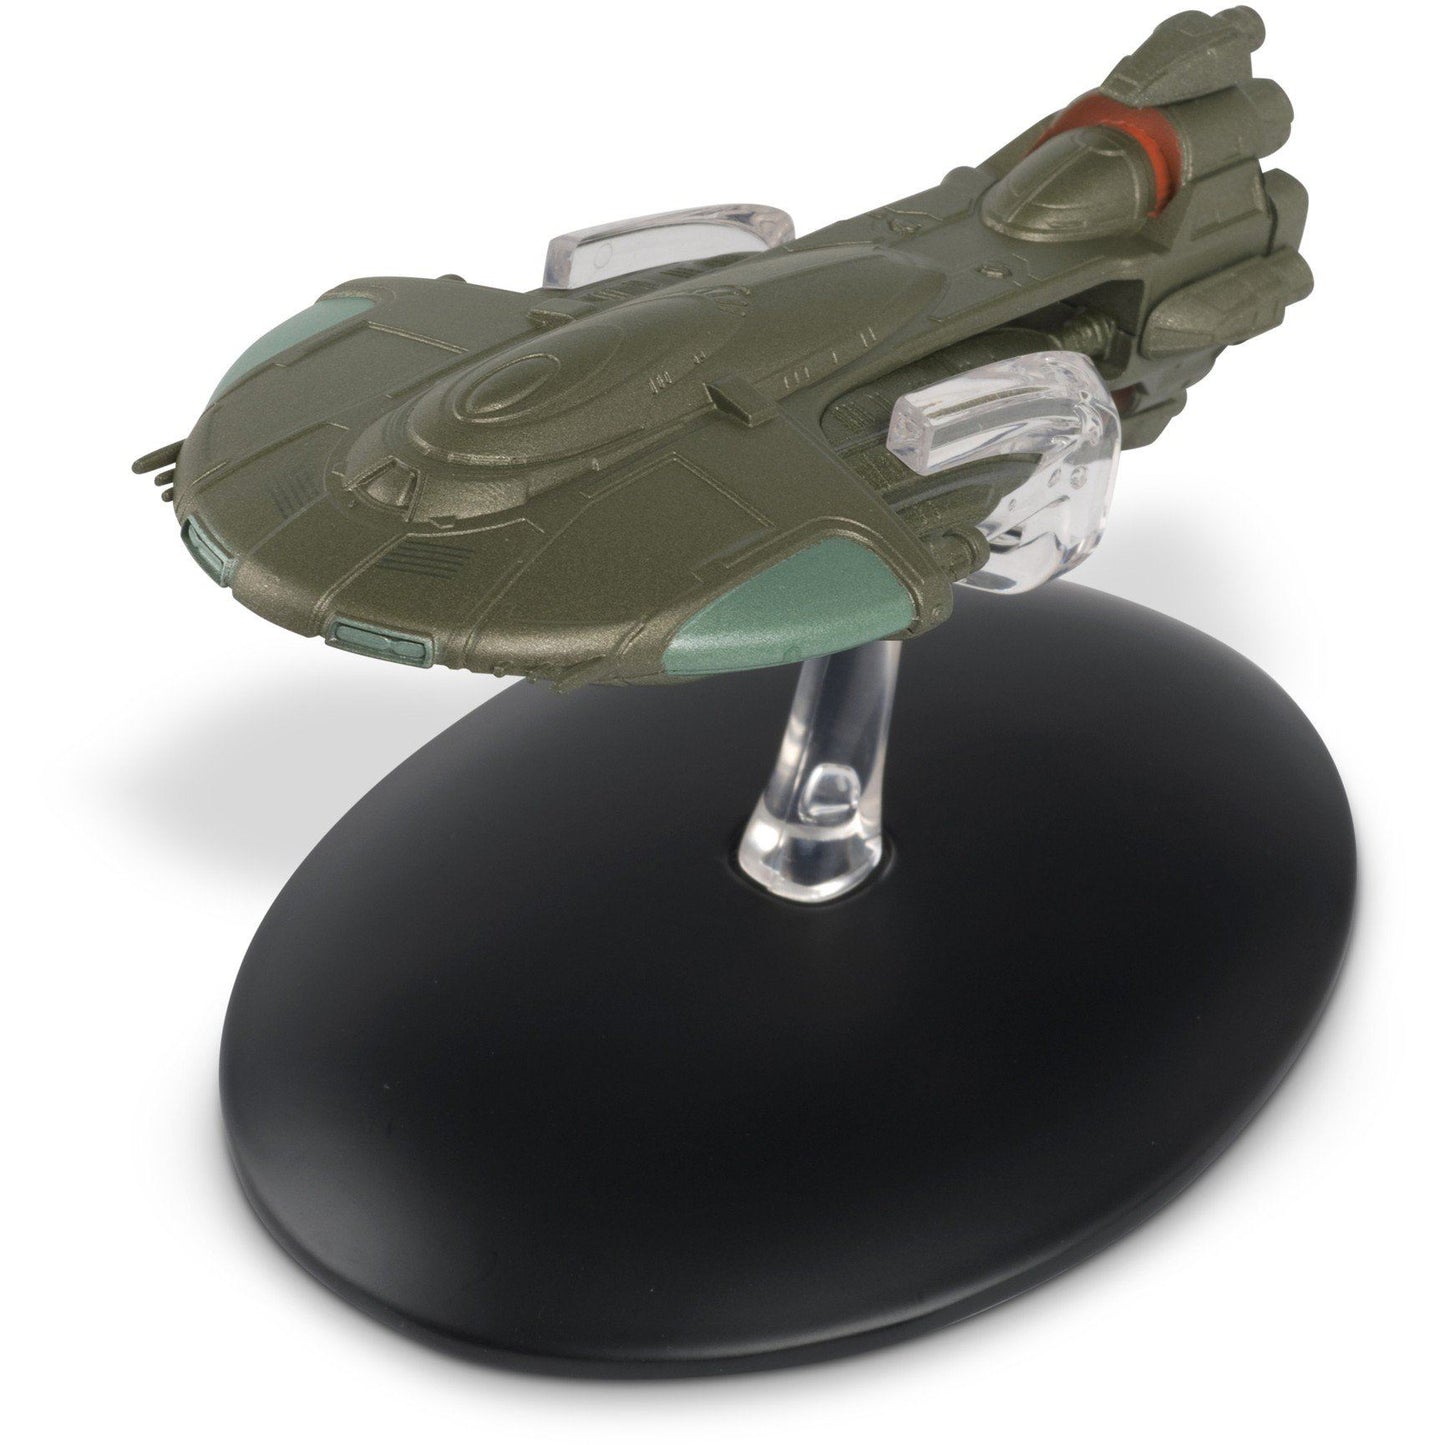 #115 Tellarite Cruiser Ship Model Die Cast (Eaglemoss / Star Trek)